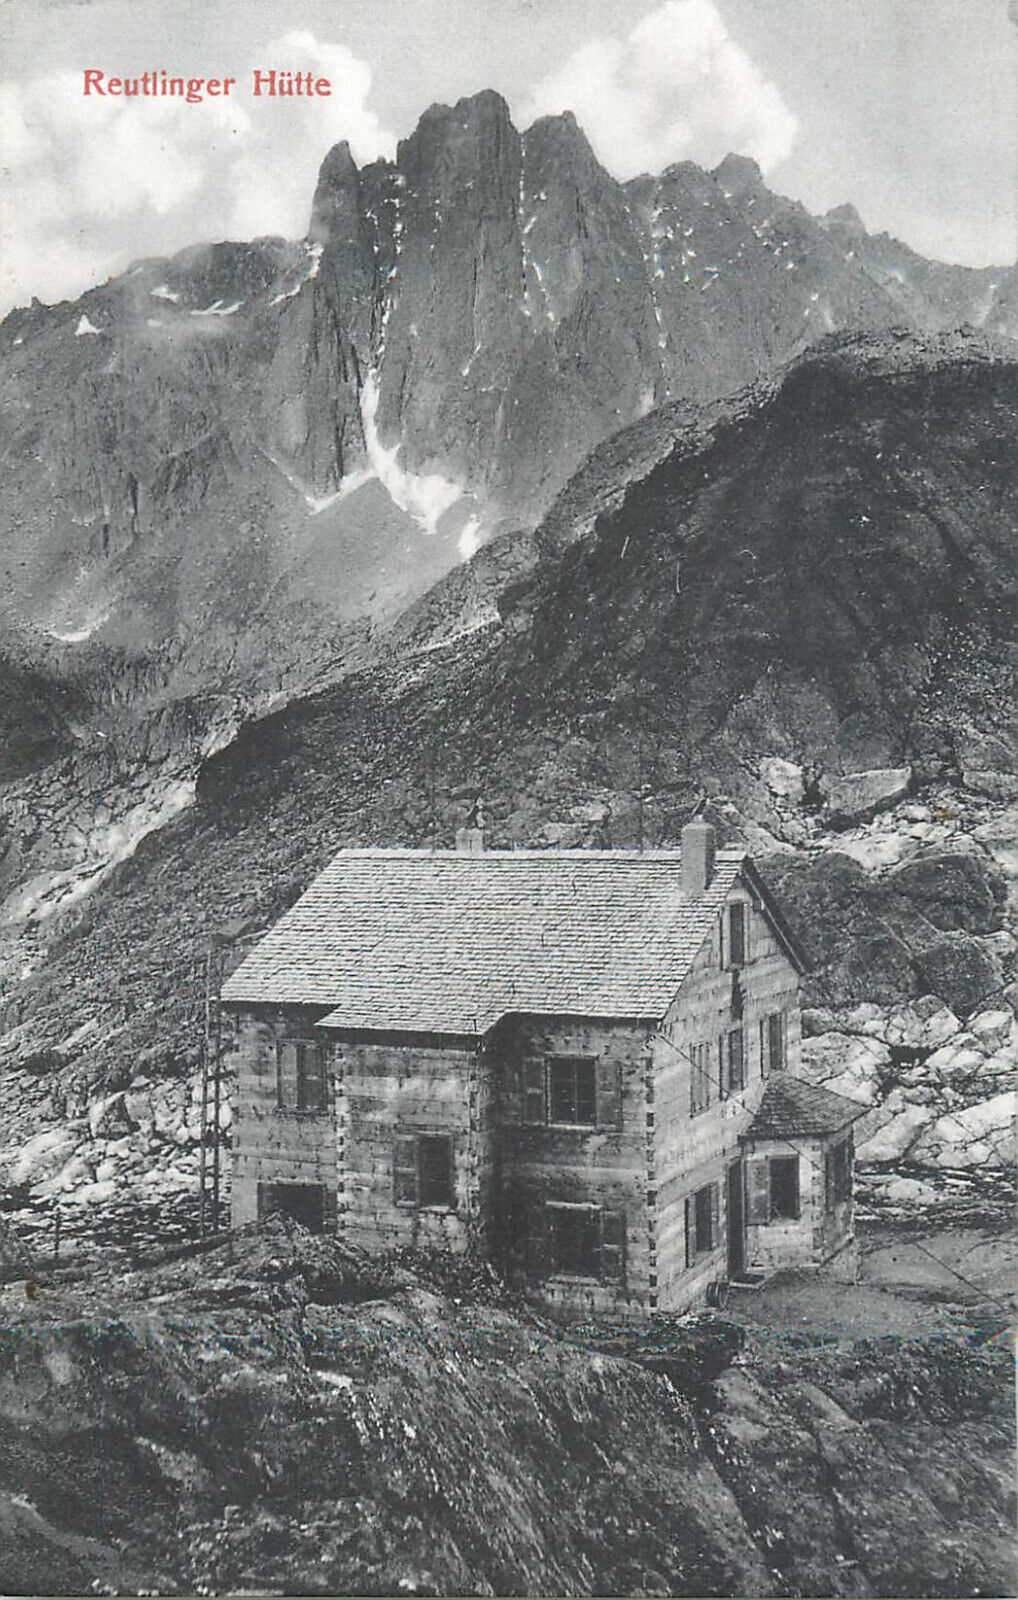 Mountaineering Austrian Alps Reutlinger Hutte cottage refuge hut 1911